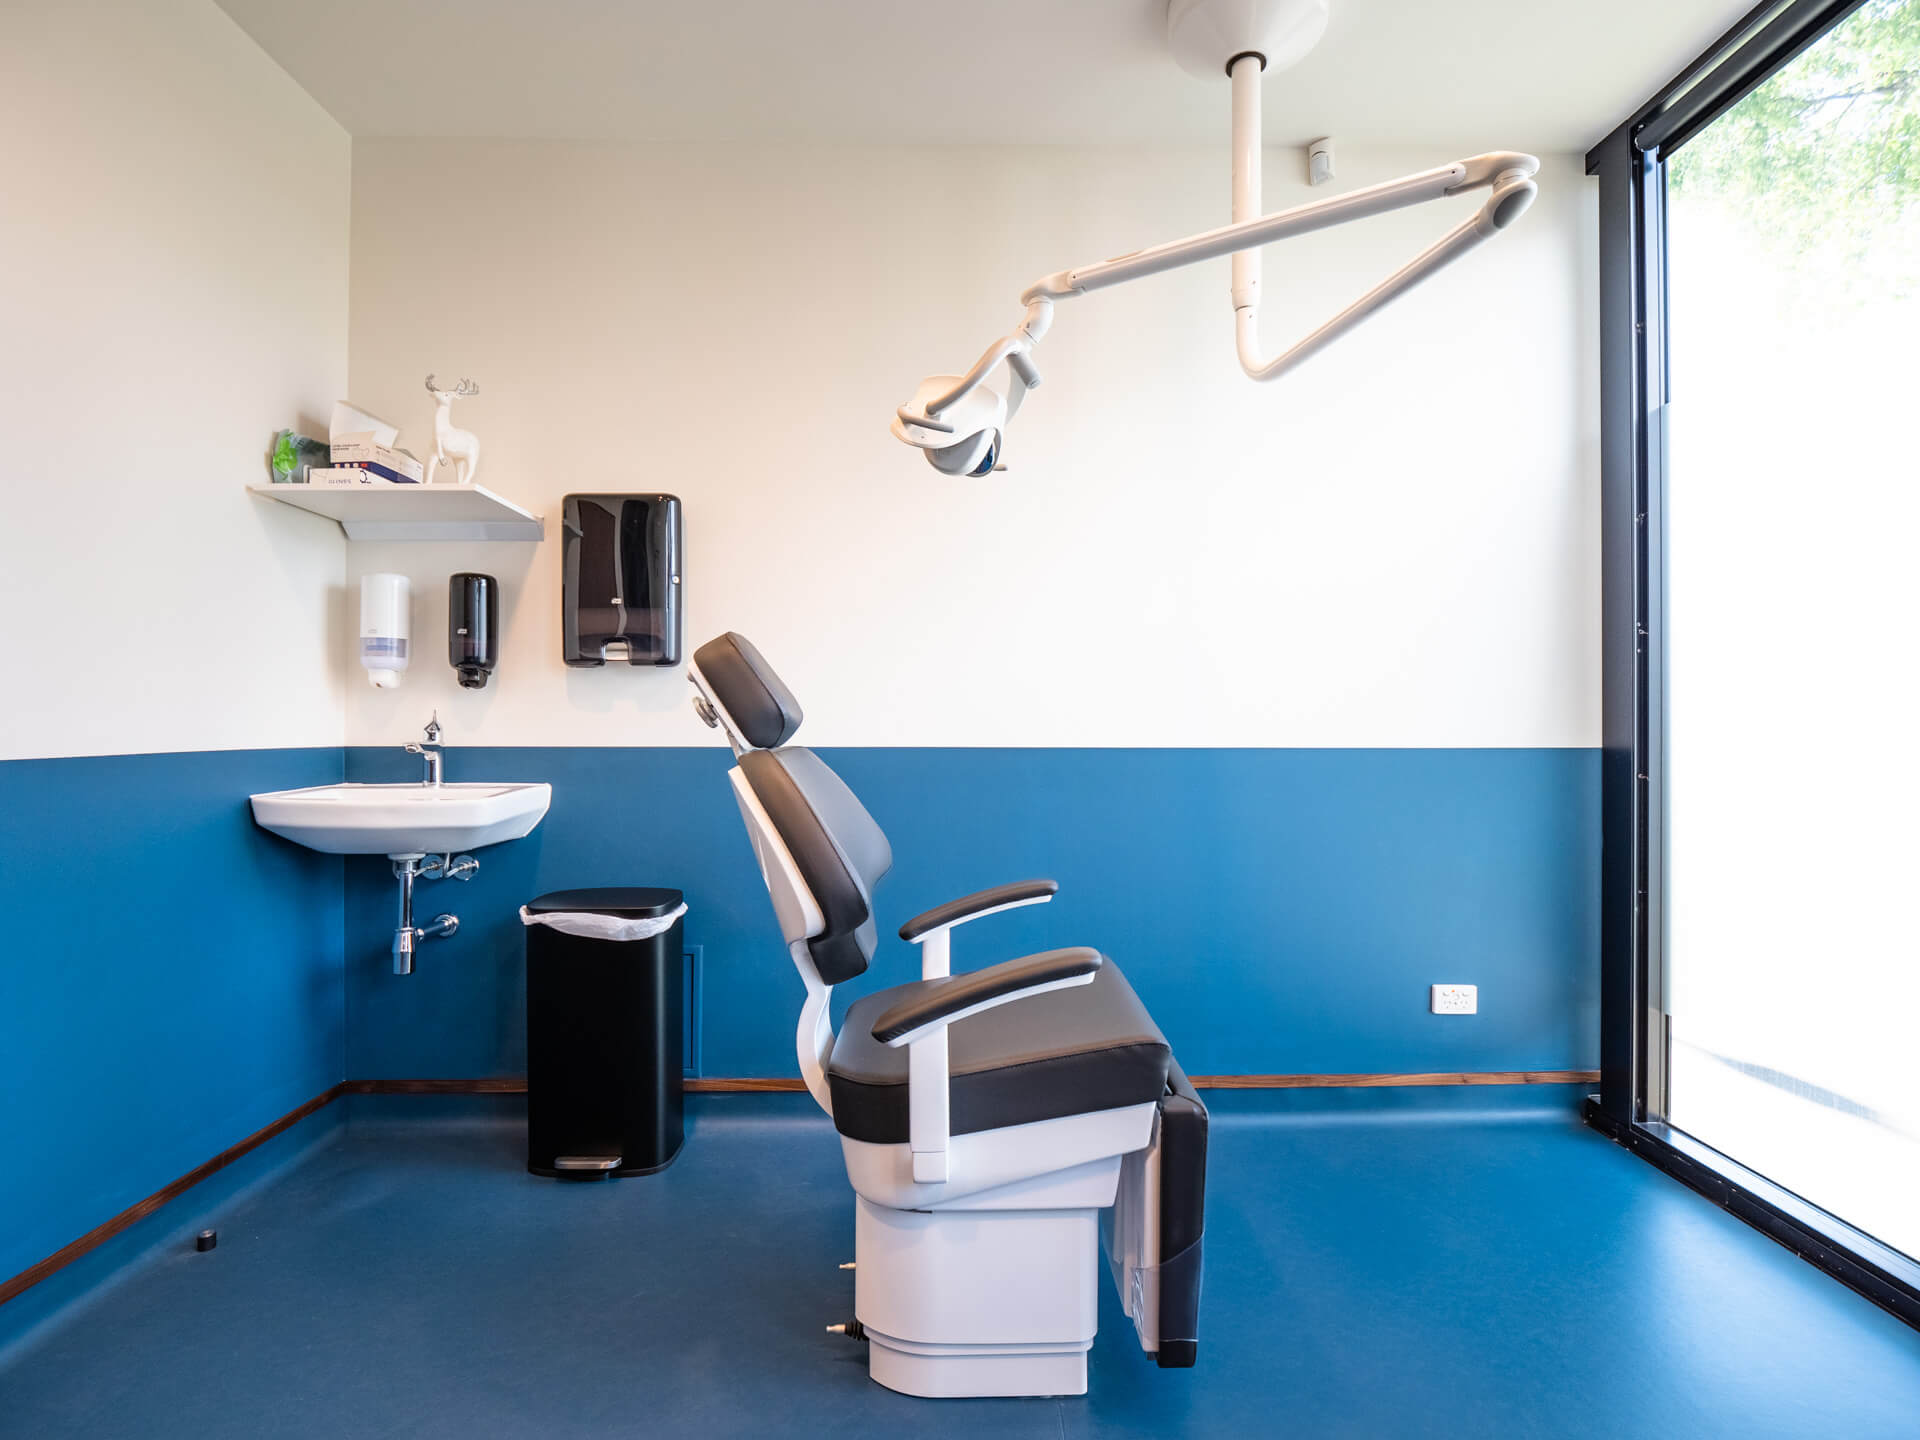 Orthodontic consult room design